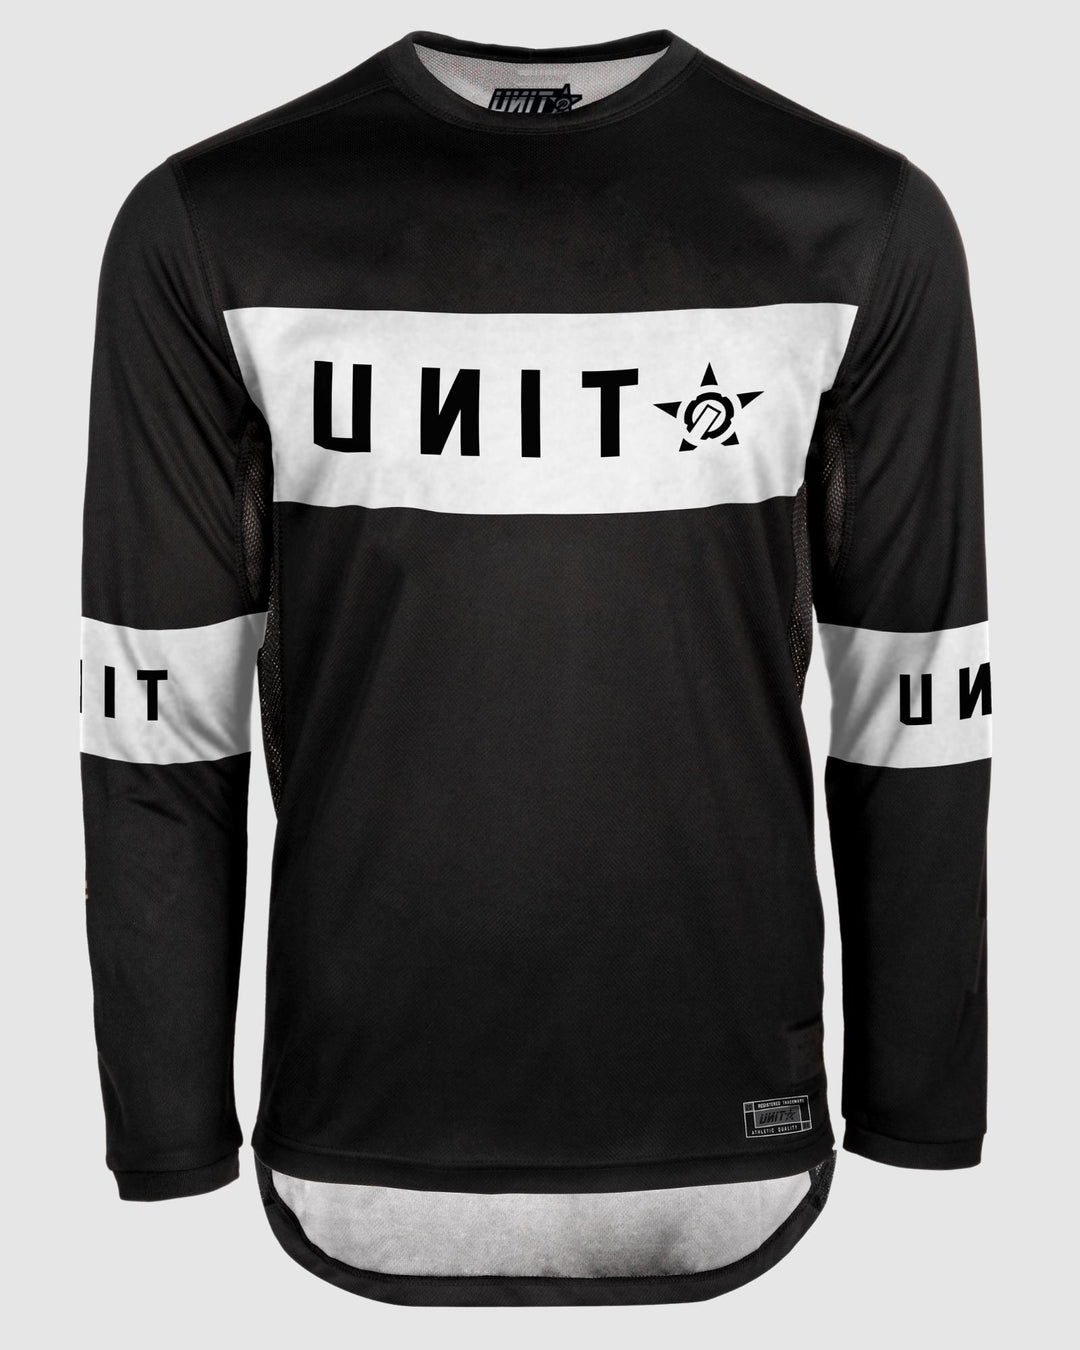 UNIT Soul MX Jersey - Slim Fit